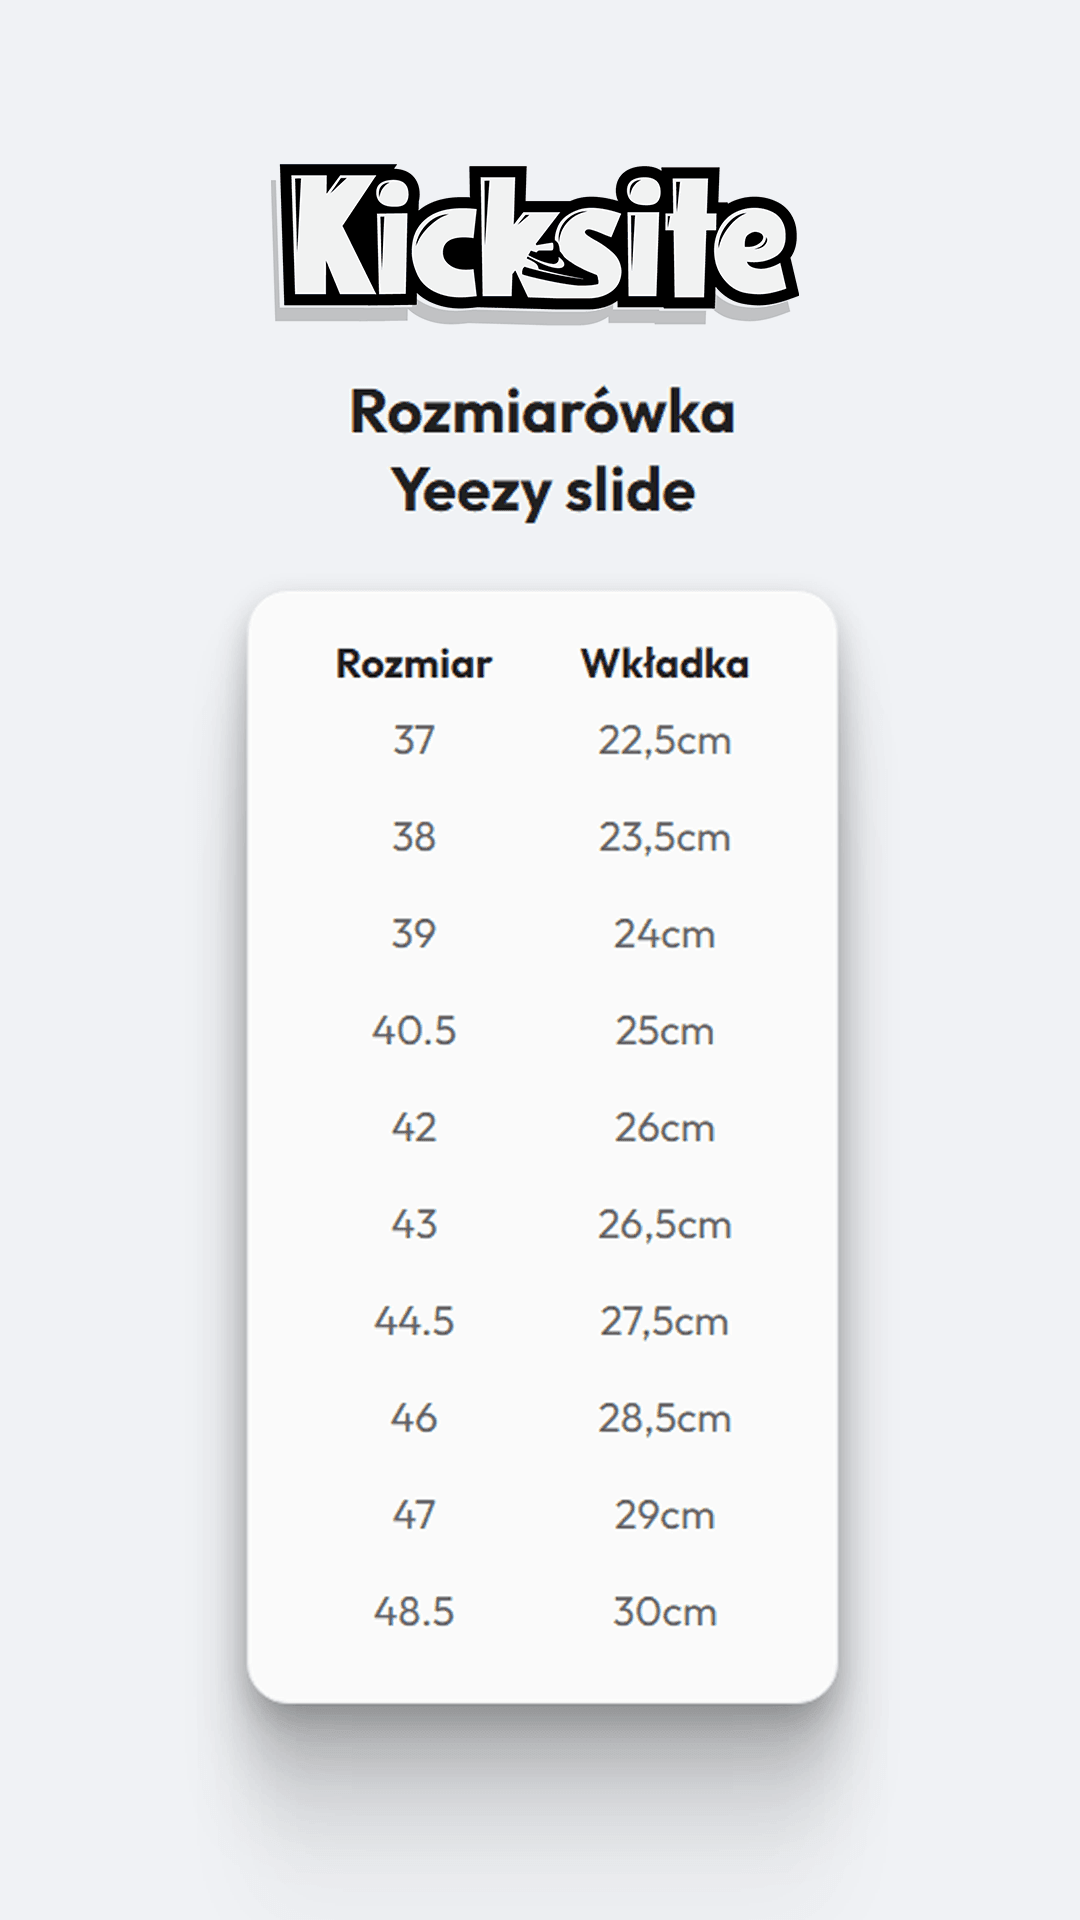 yeezy-slide - Kicksite